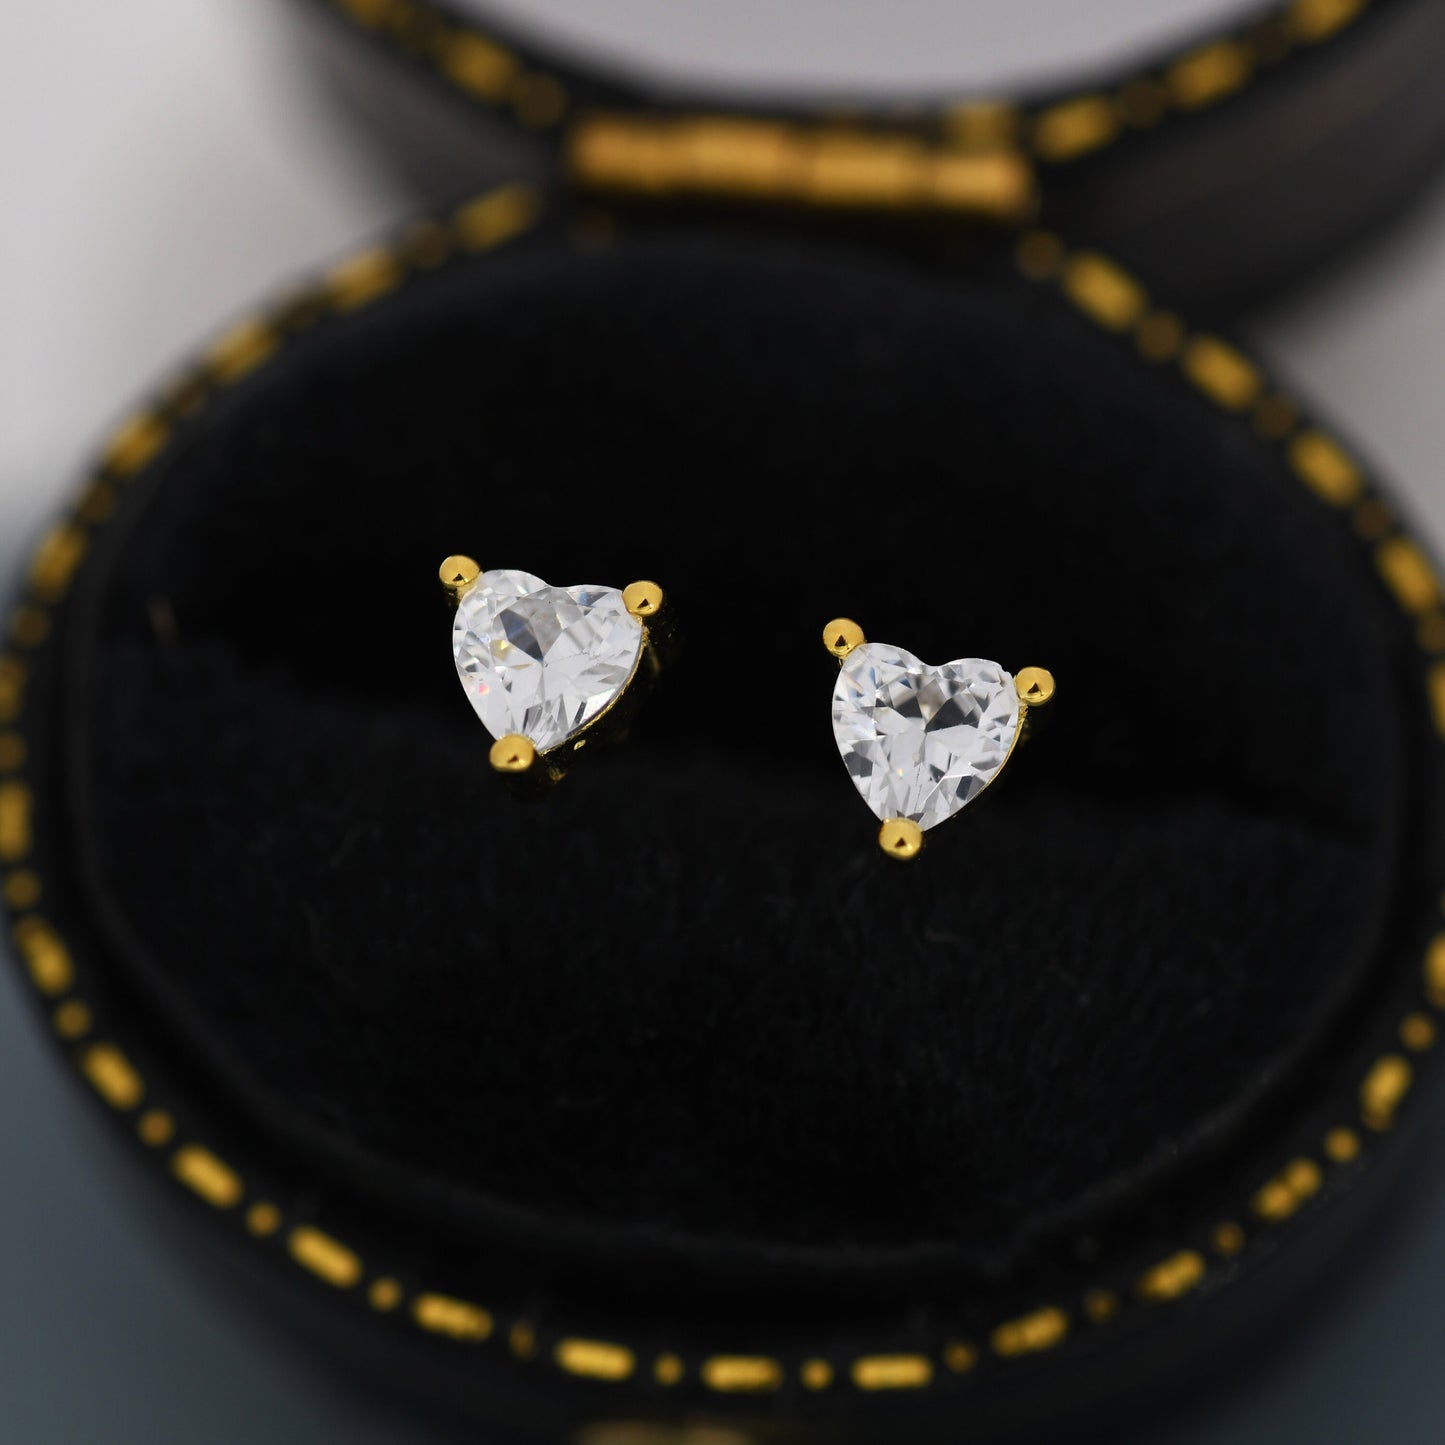 Tiny CZ Heart Stud Earrings in Sterling Silver, Silver or Gold,  Diamond CZ Crystal Heart Earrings, Stacking Earrings